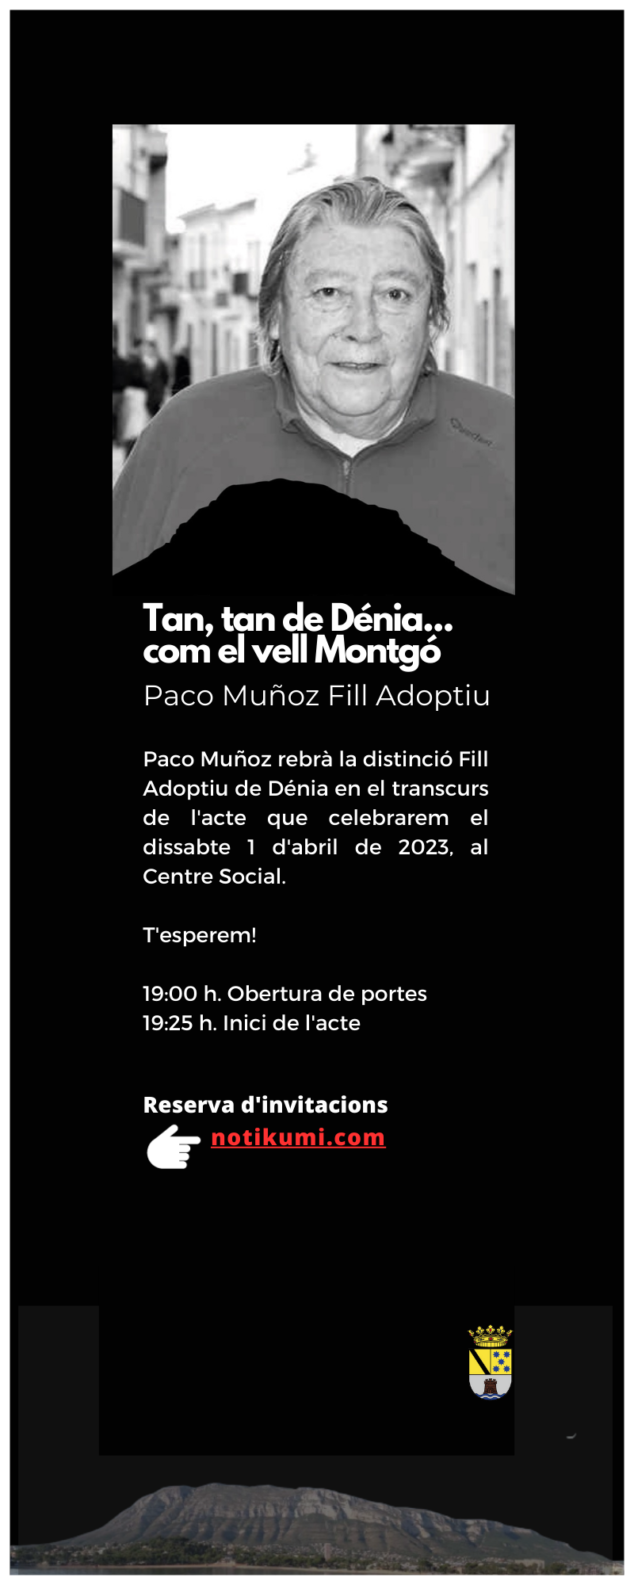 Imagen: Invitación de reserva para el acto de Paco Muñoz